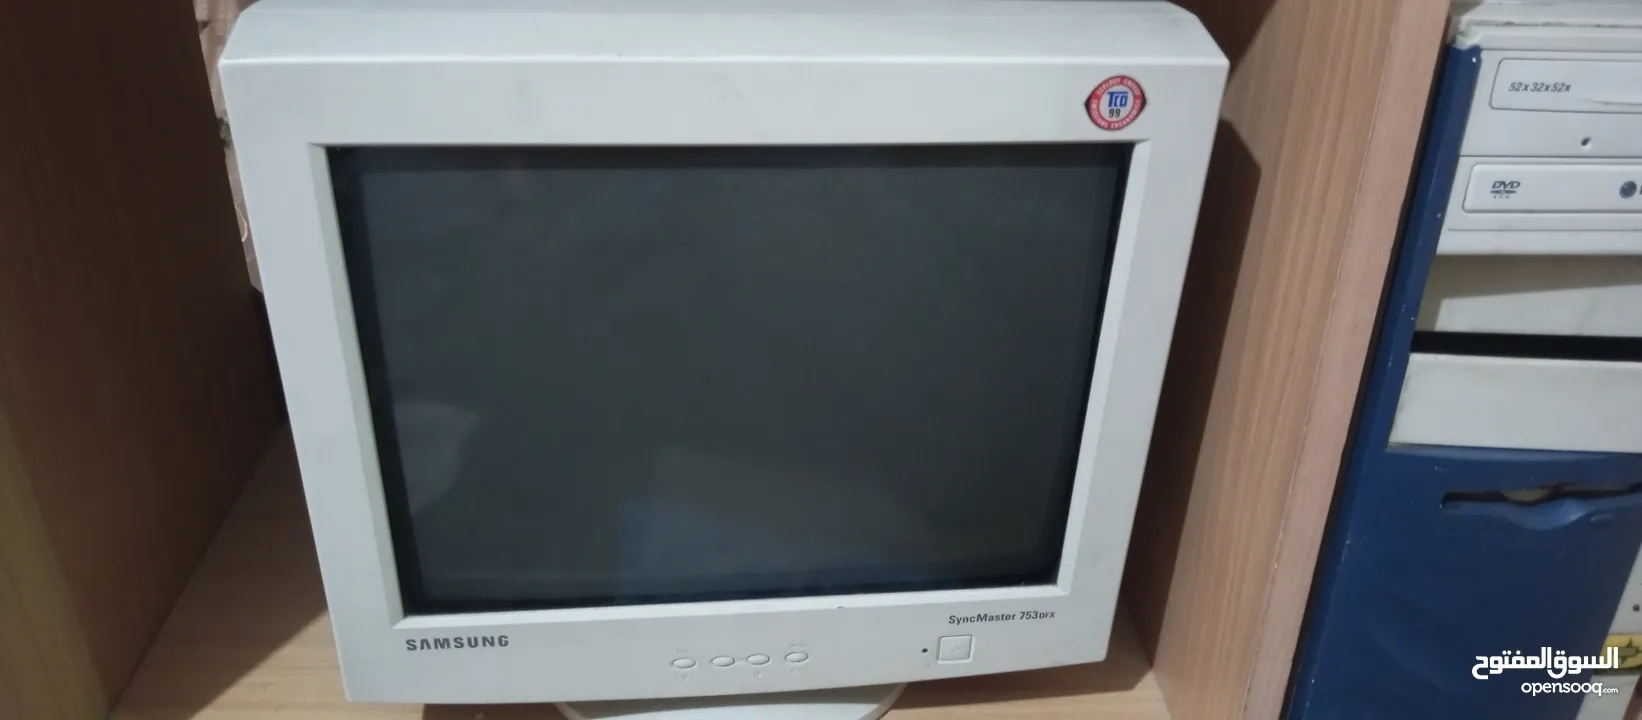 شاشه كمبيوتر سامسونج مستعمله بسعر7دنانير